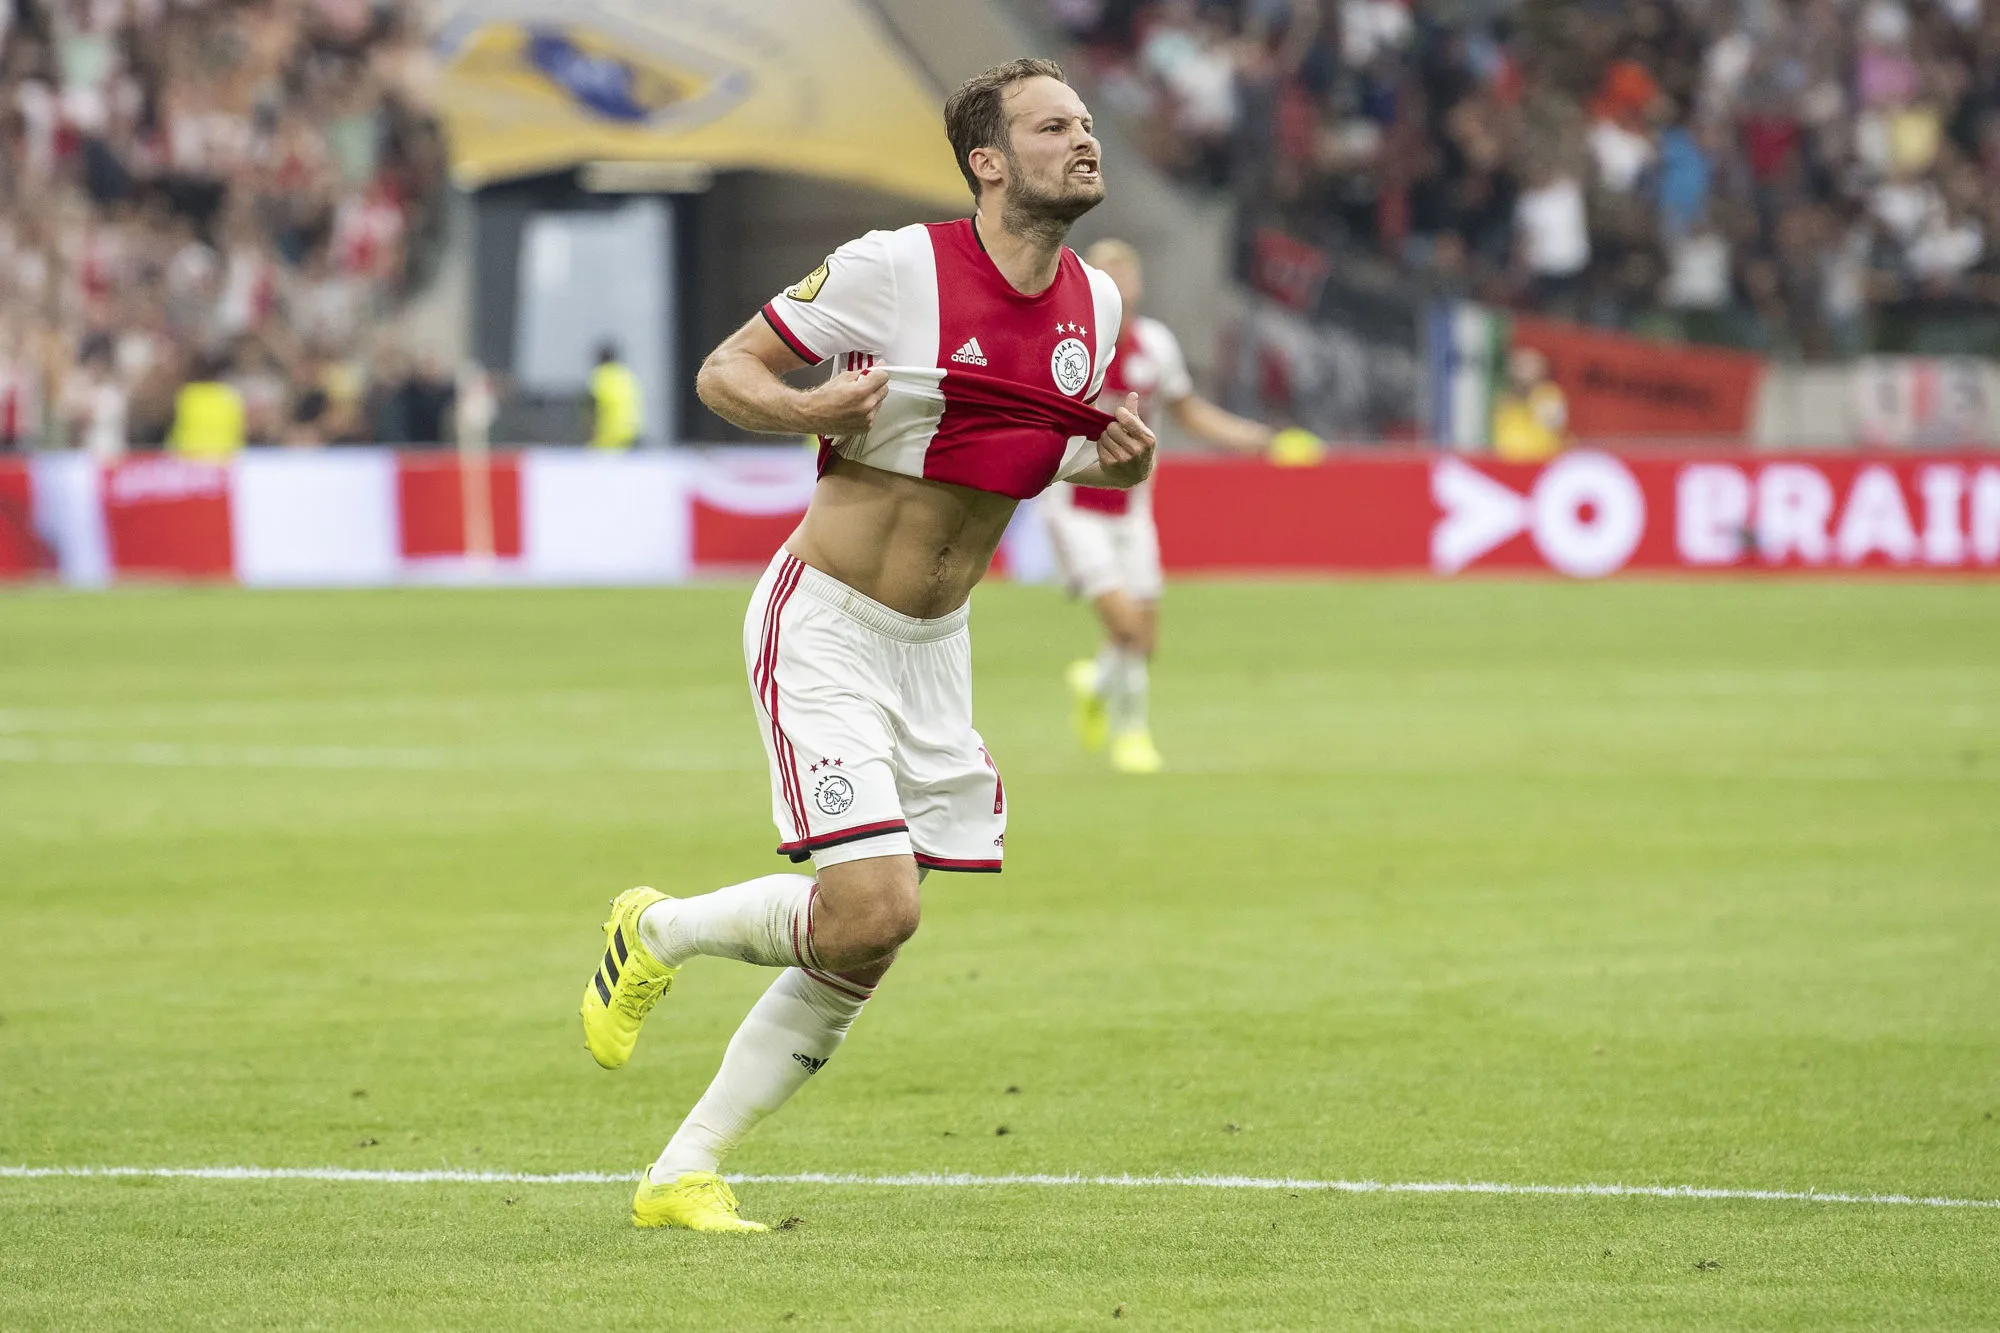 Pronostic Ajax Valence : Analyse, prono et cotes doublées sur le match de Ligue des champions